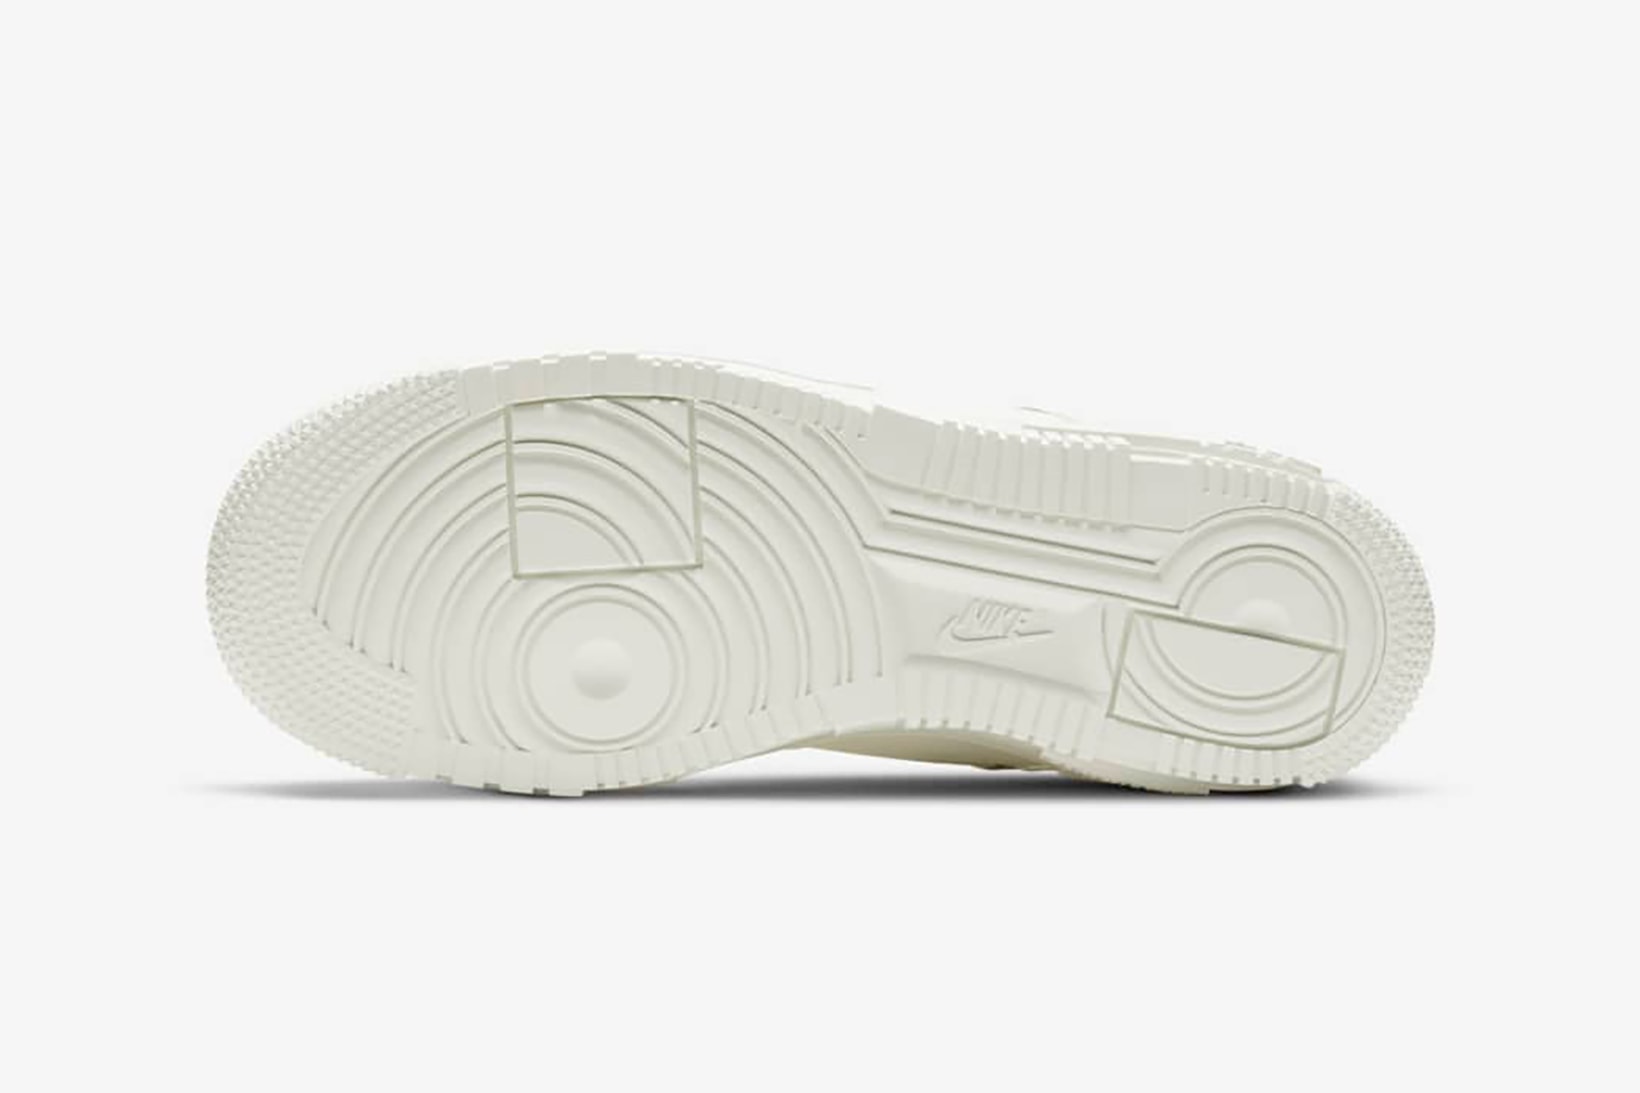 nike air force 1 pixel womens sneakers sail snake skin pattern white colorway sneakerhead footwear shoes sole